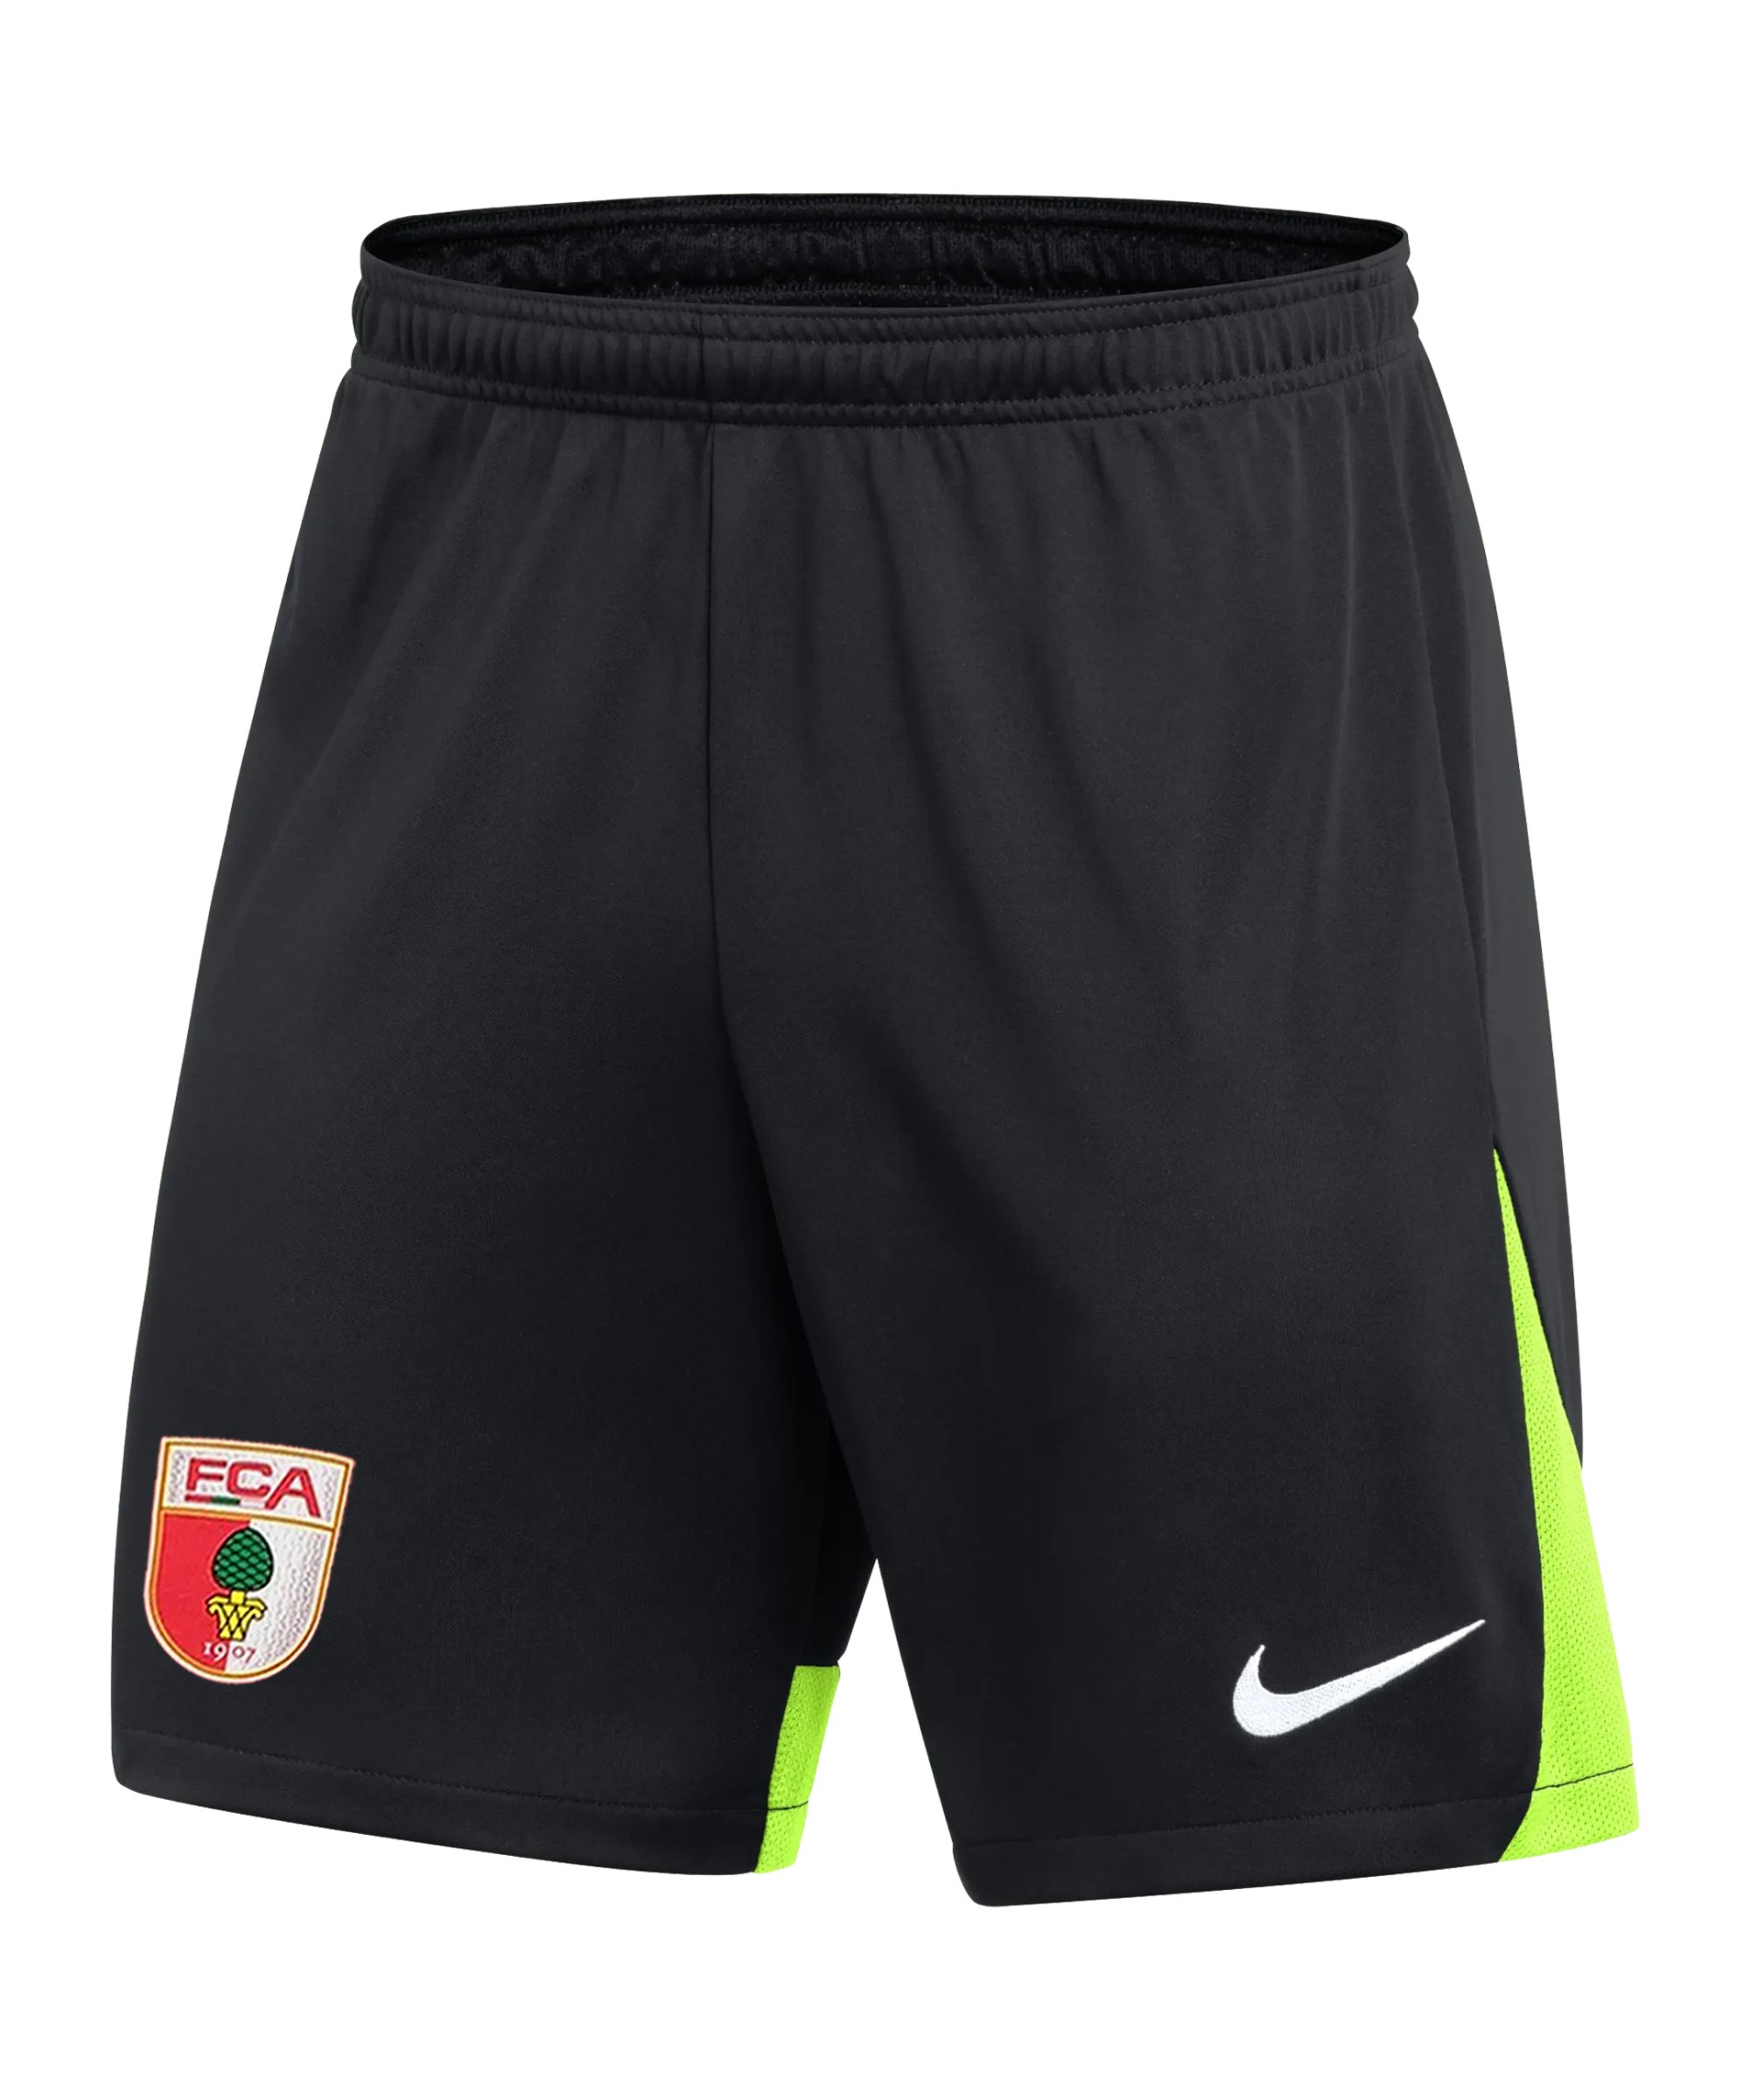 Nike FC Augsburg Short Schwarz F011 - schwarz